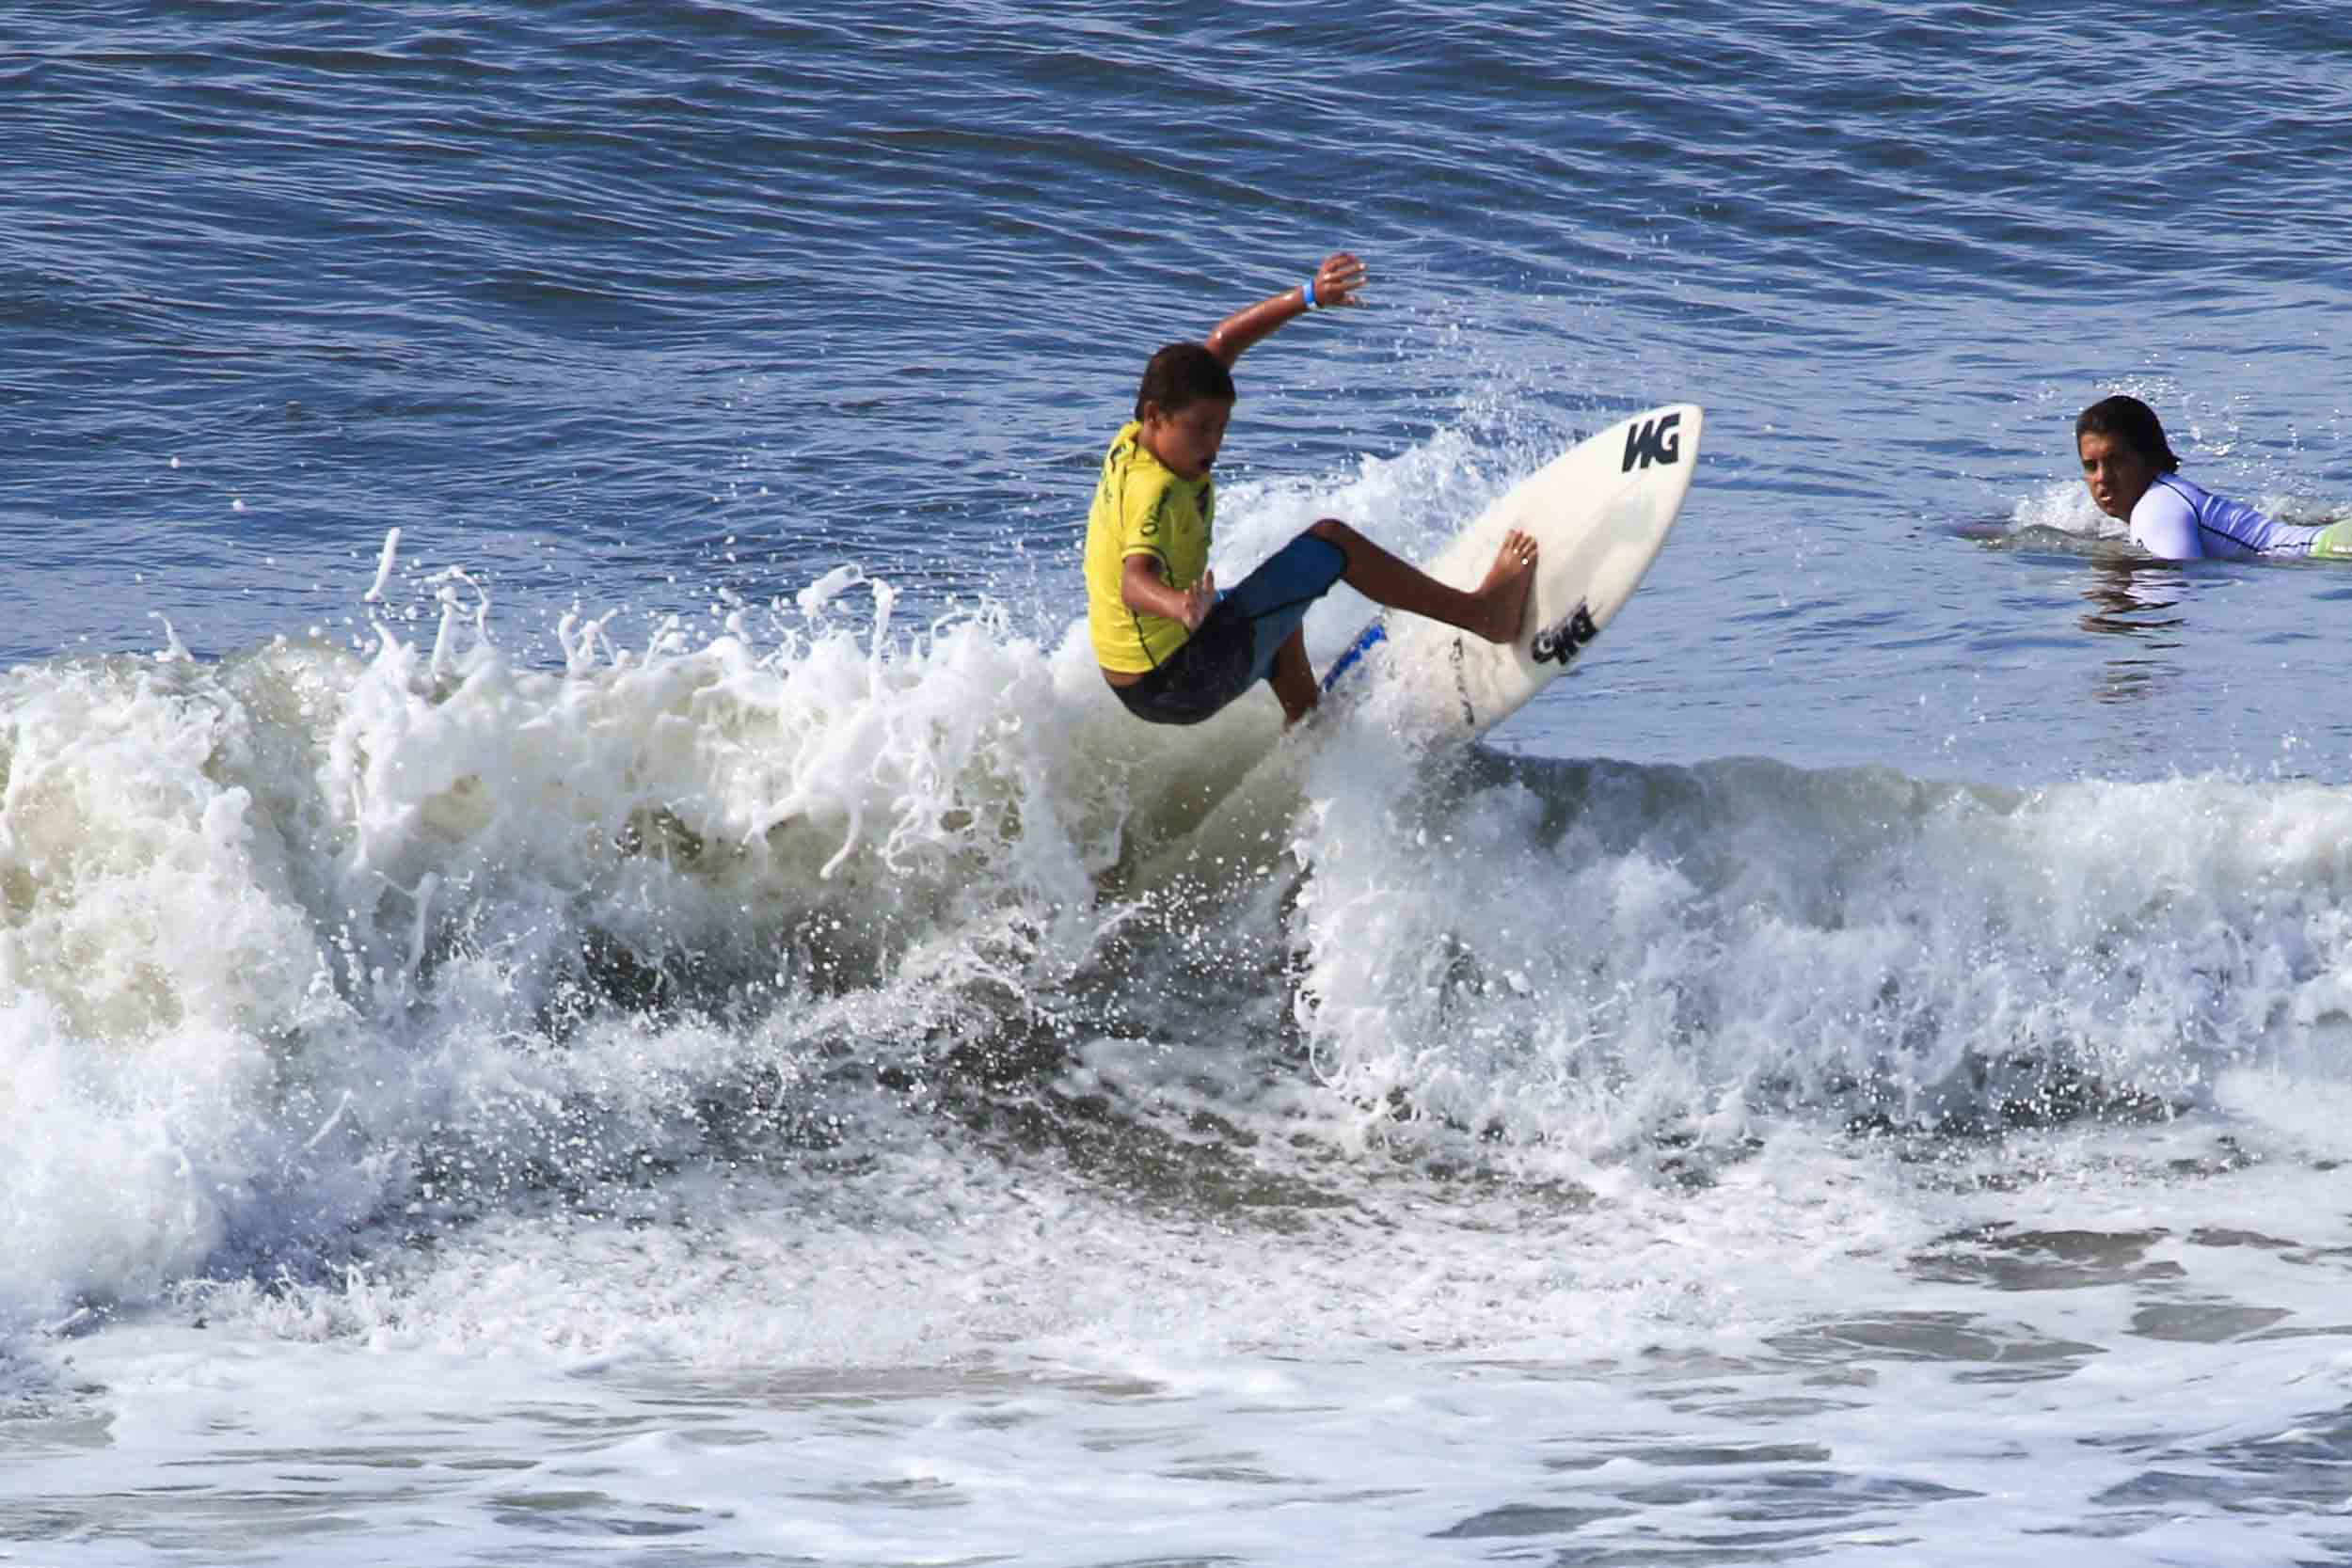 Voltando ao mar depois de meses afastado, surfista de 16 anos se compara como Fênix